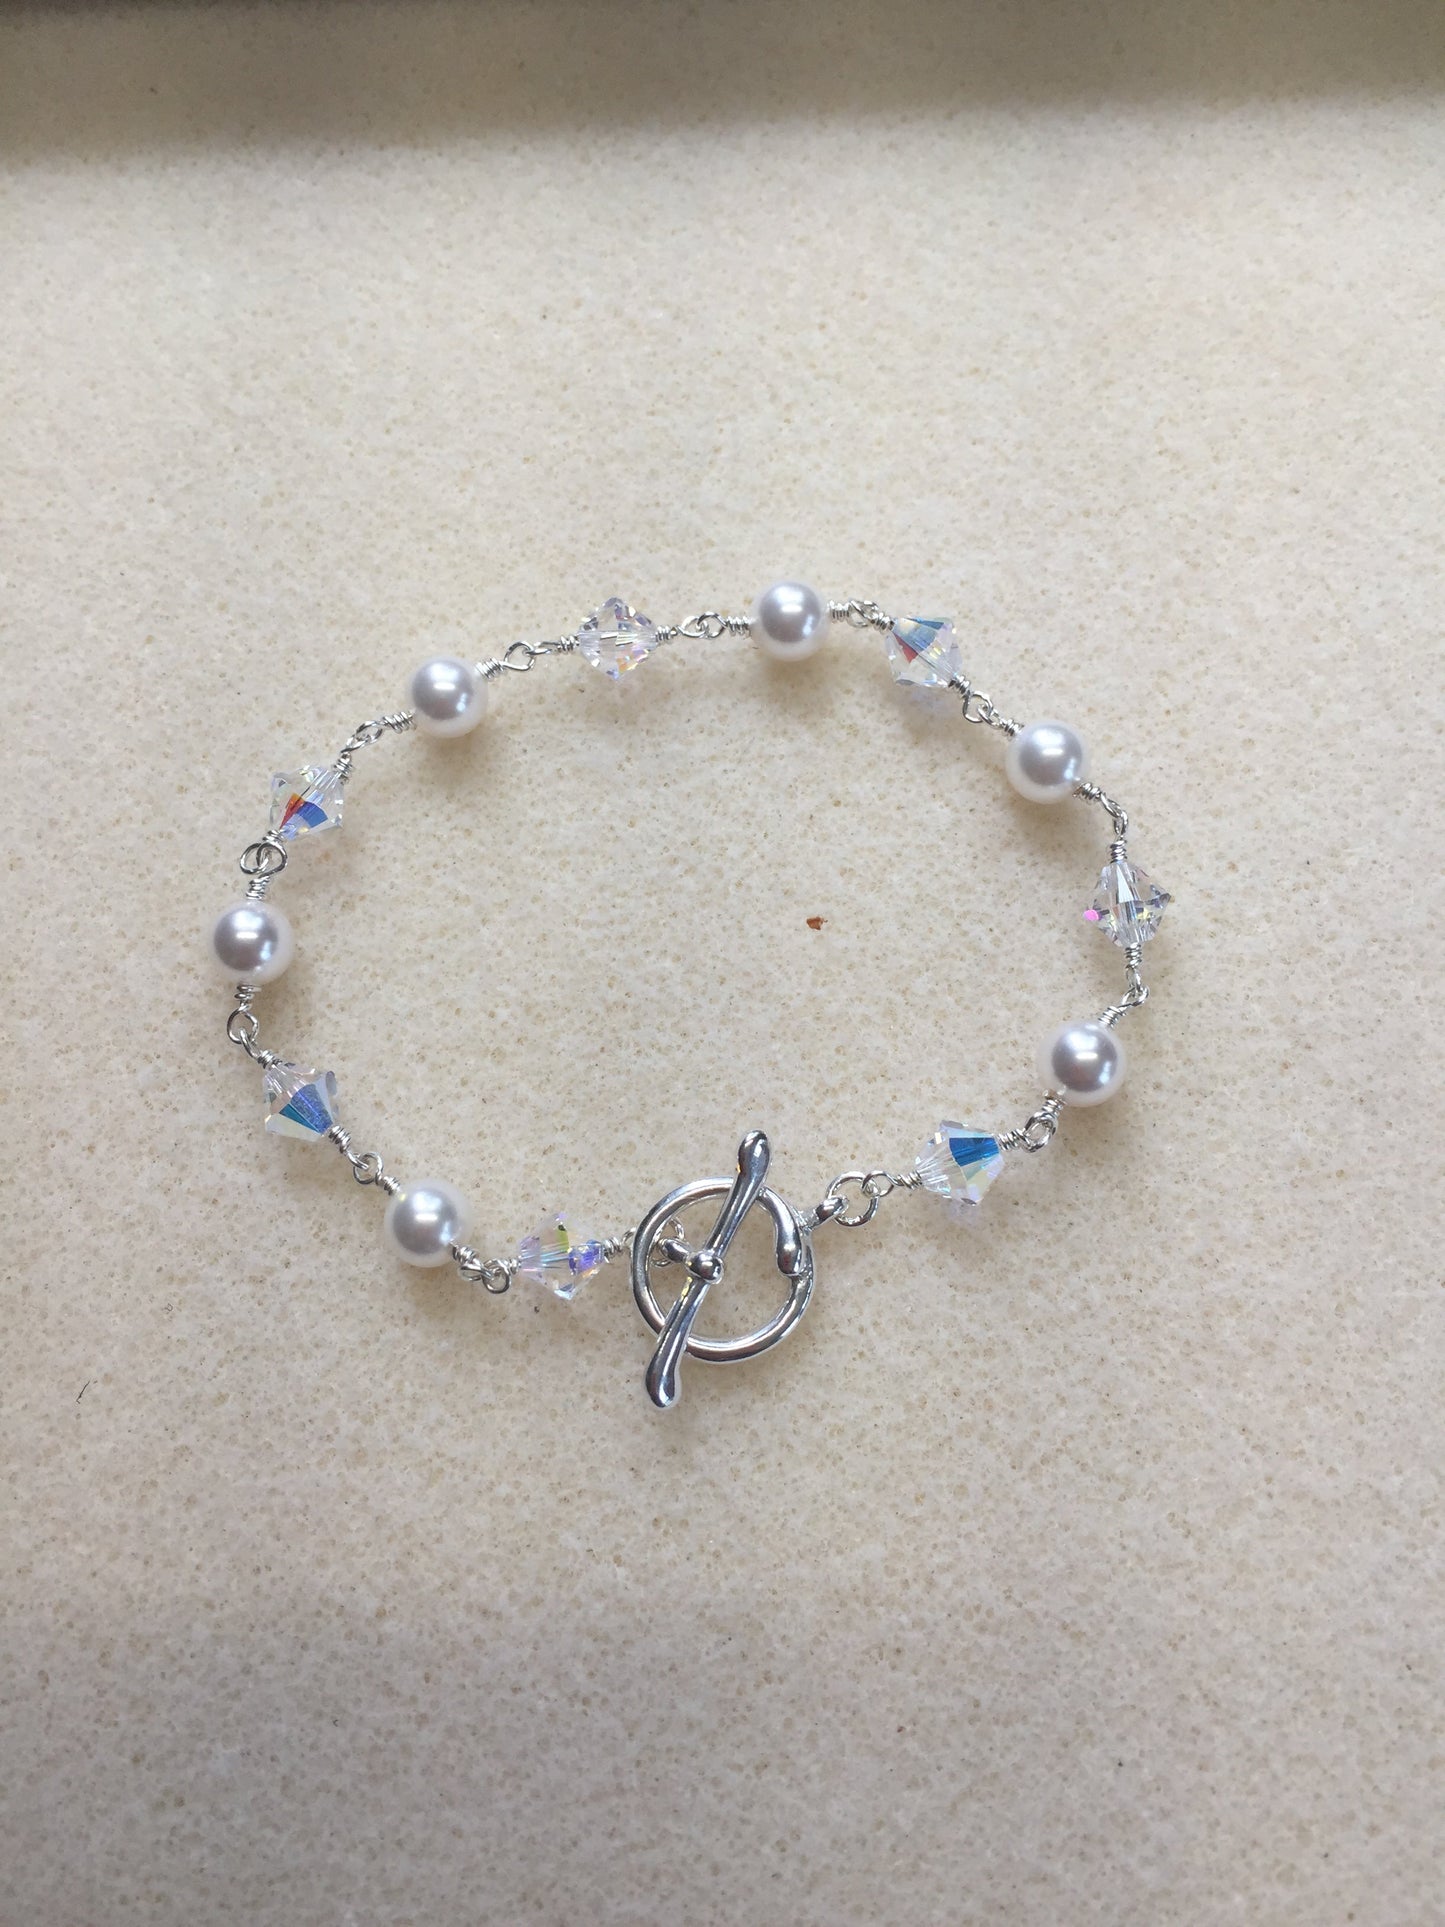 Swarovski Pearls & Crystals wire wrapped Bracelet